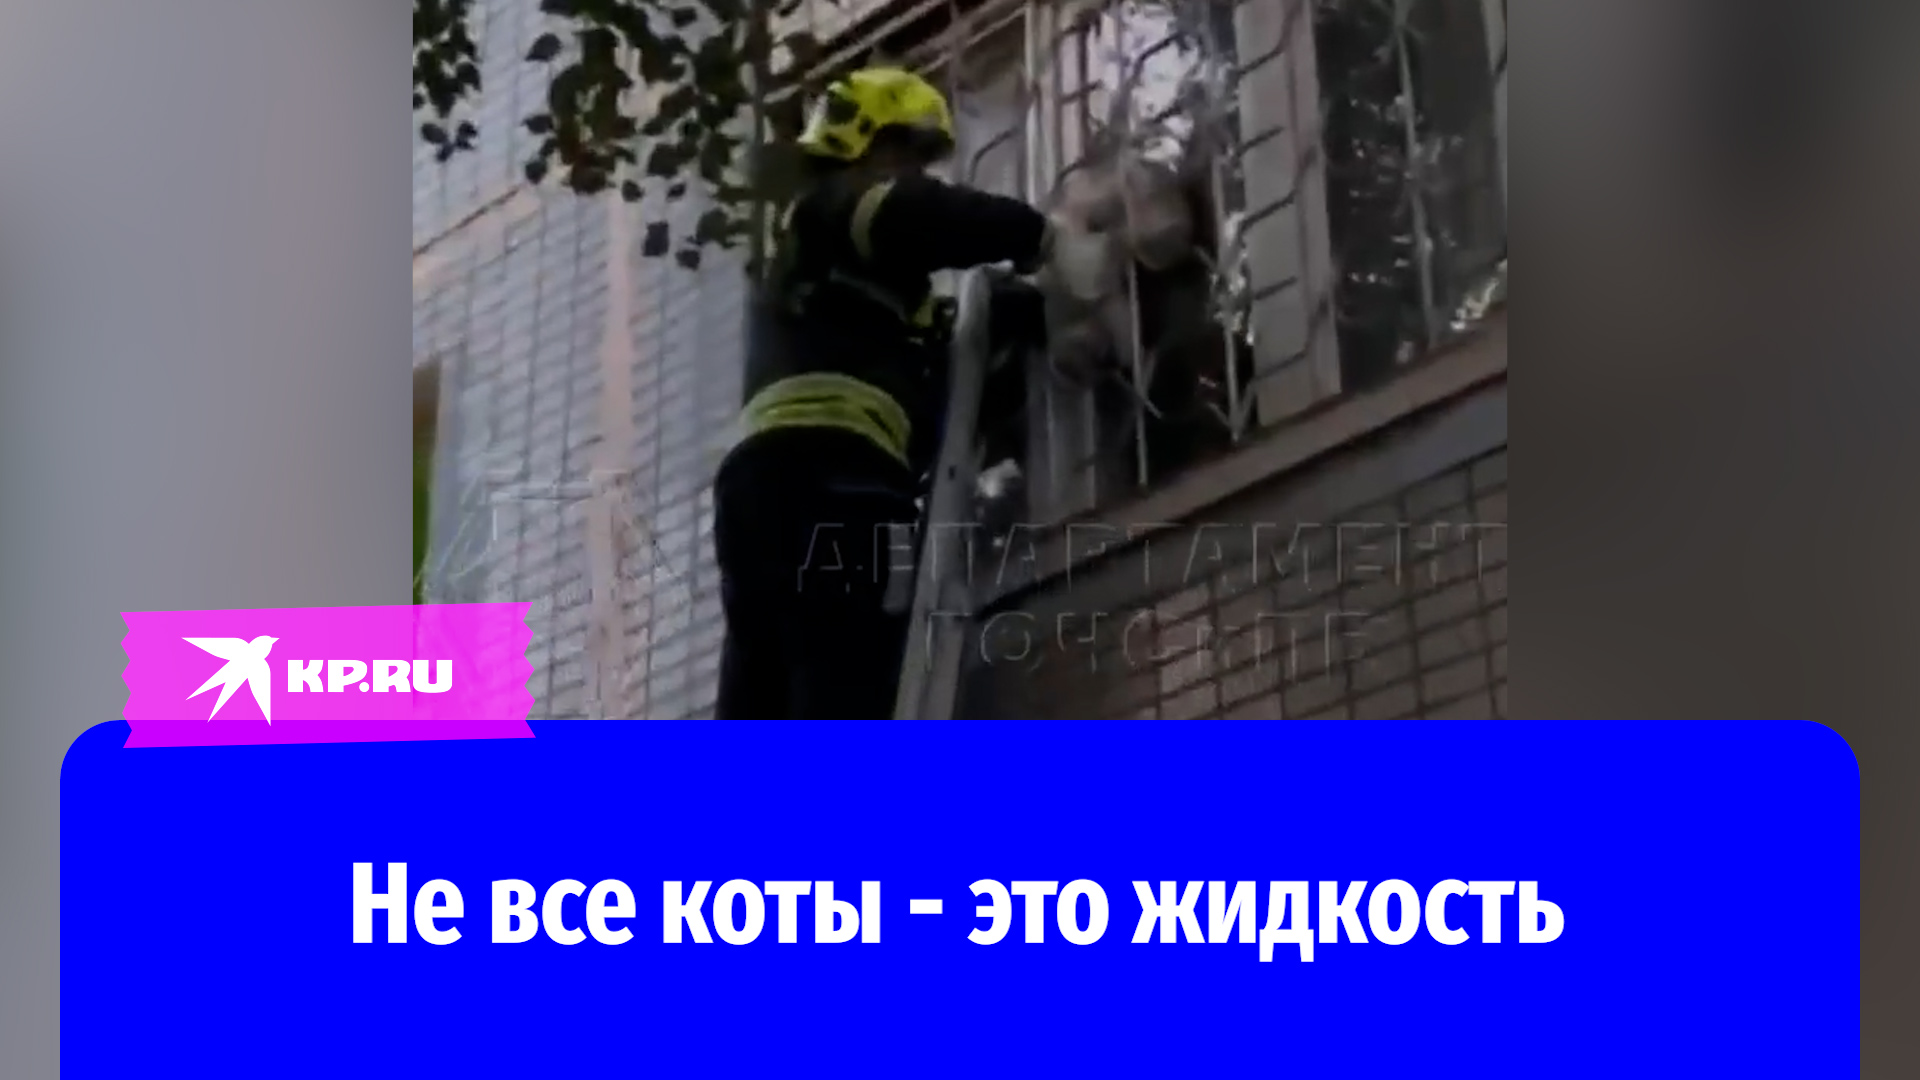 В Москве спасатели достали застрявшего в оконной решётке кота